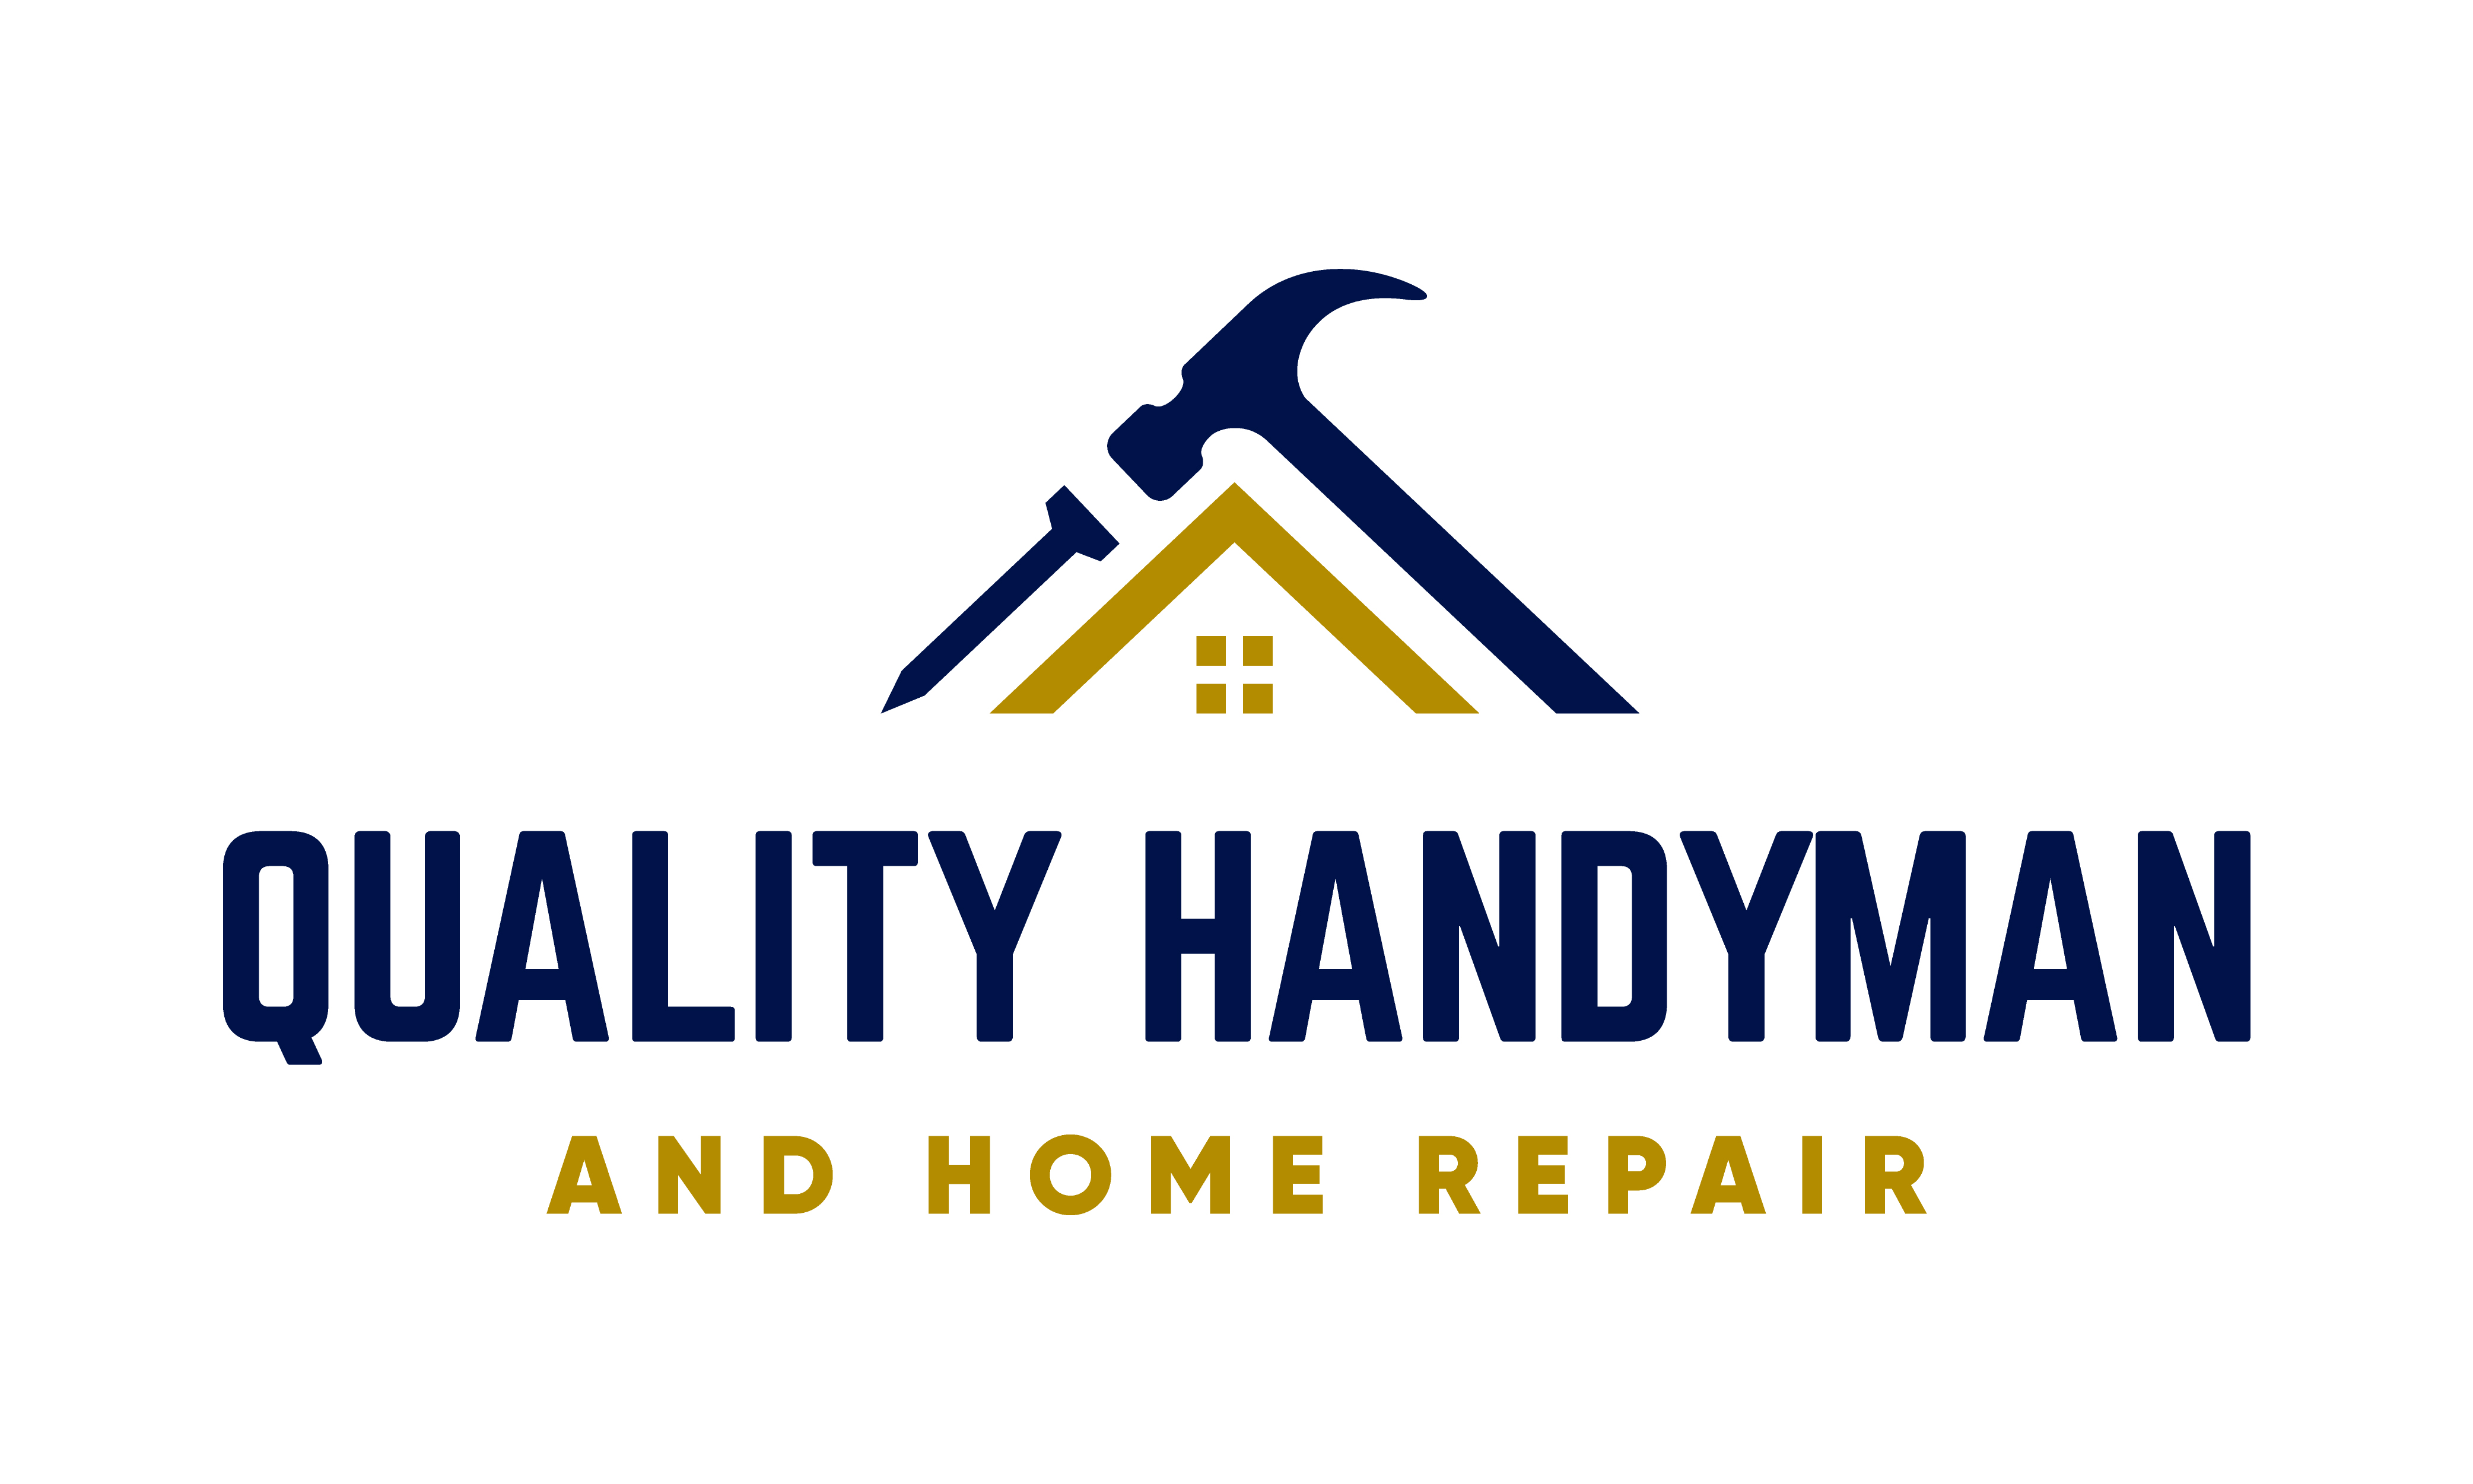 Quality Handyman & Home Repair